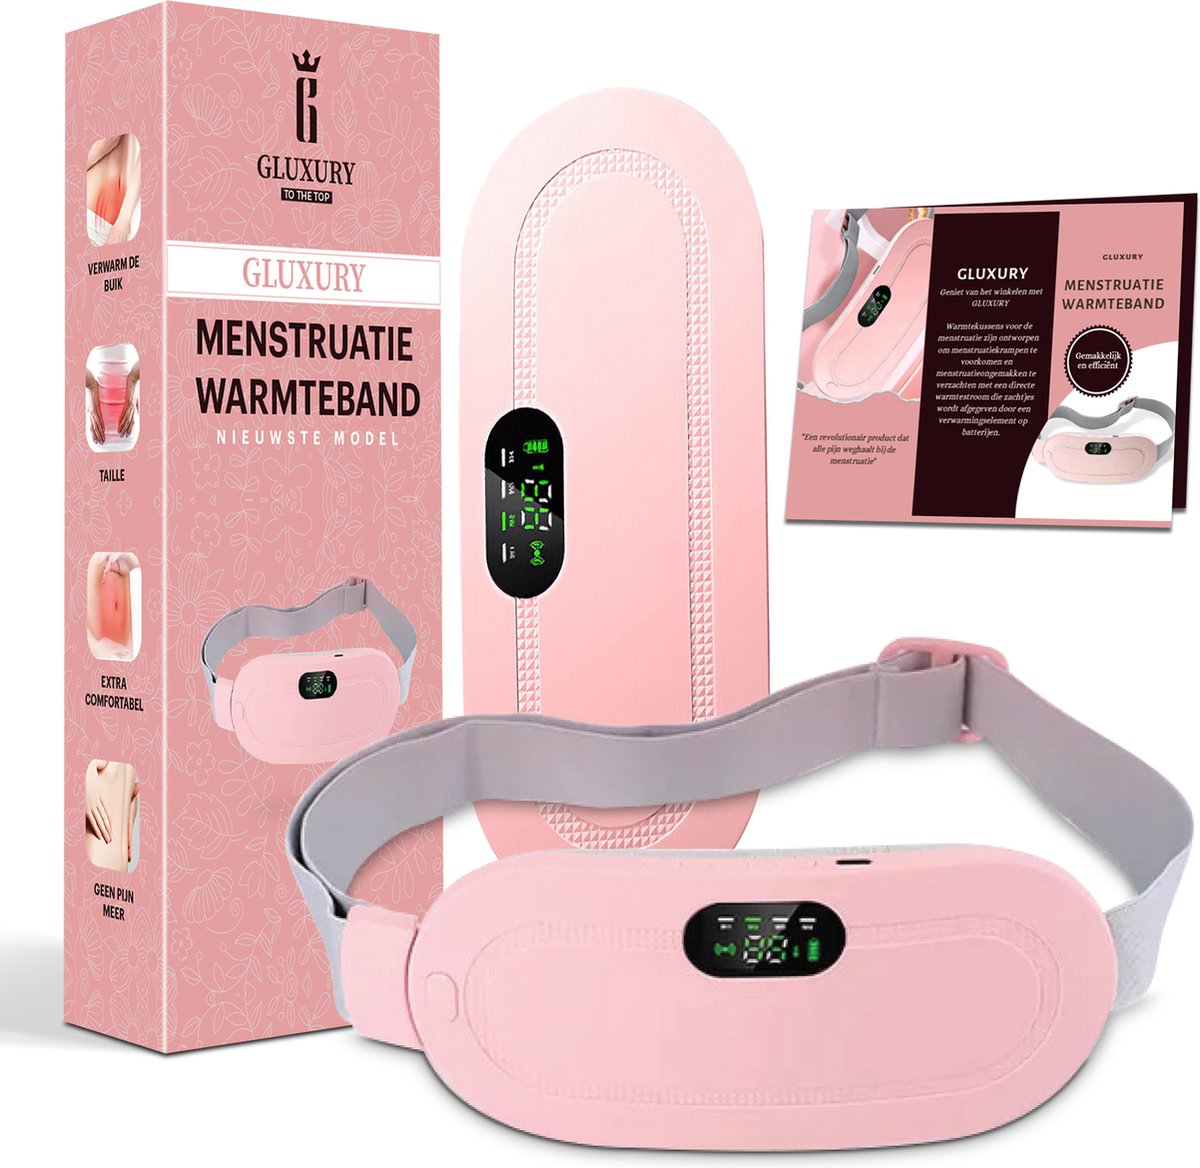 Gluxury Menstruatie Warmteband Verwarmde Menstruatieband Verwarmingsband 3 Warmtestanden Massagekussen Triltechnologie Roze